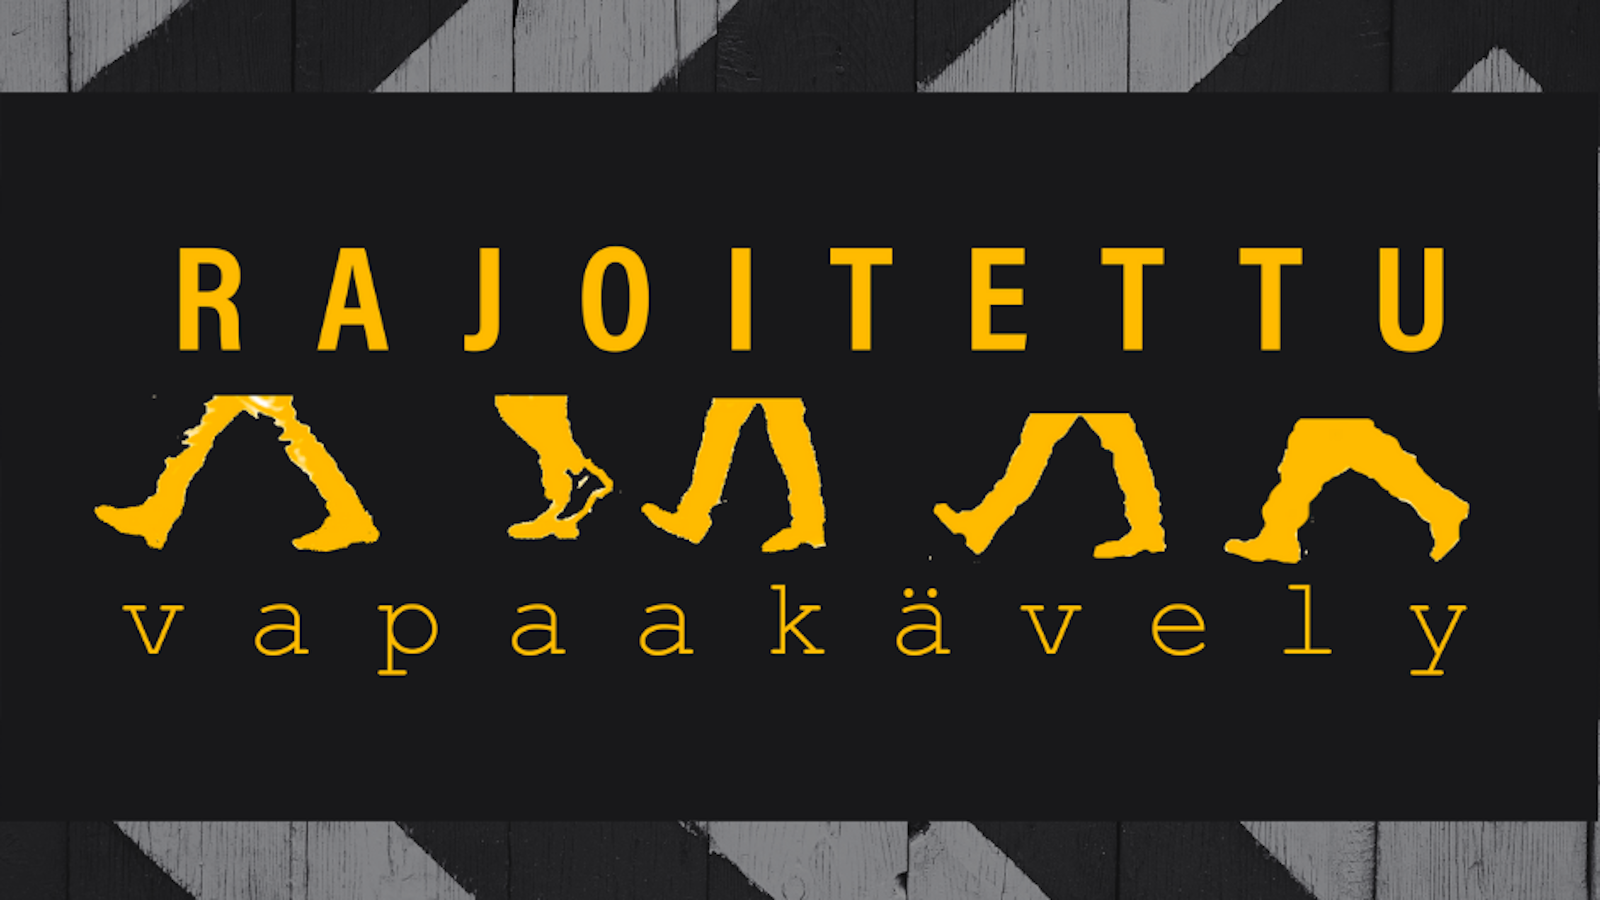 Kuvassa on mustalla pohjalla alhaalla ja ylhäällä vinot harmaat lautapalkit ja keskellä keltaisella teksti Rajoitettu vapaakävely.  Sanojen välissä on jalkoja kävelemässä. 